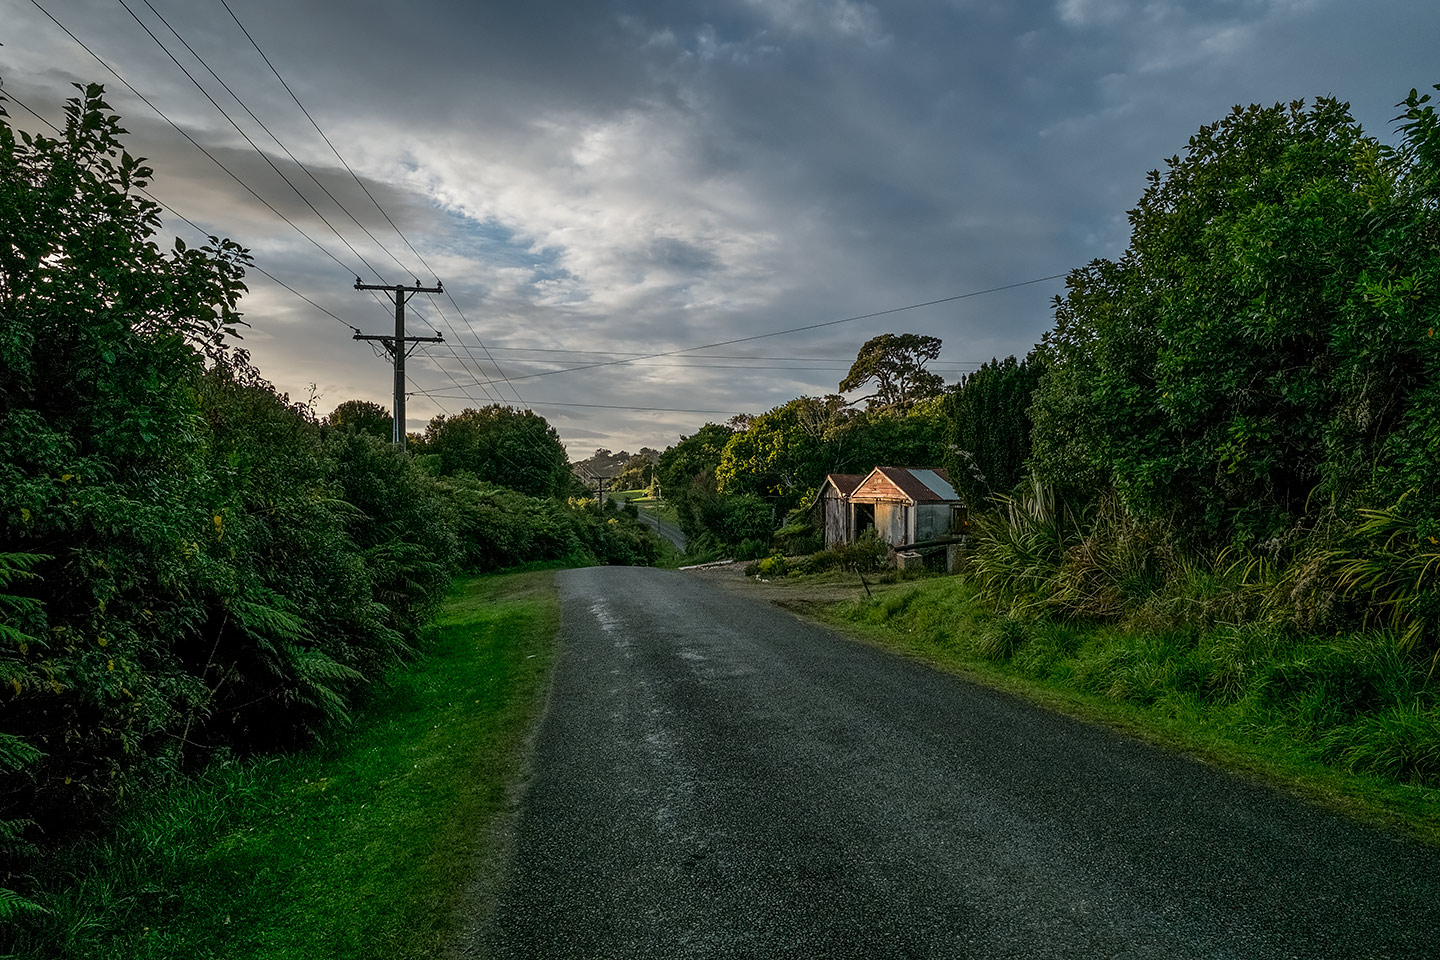 Fern Gully, Rakiura National Park, New Zealand